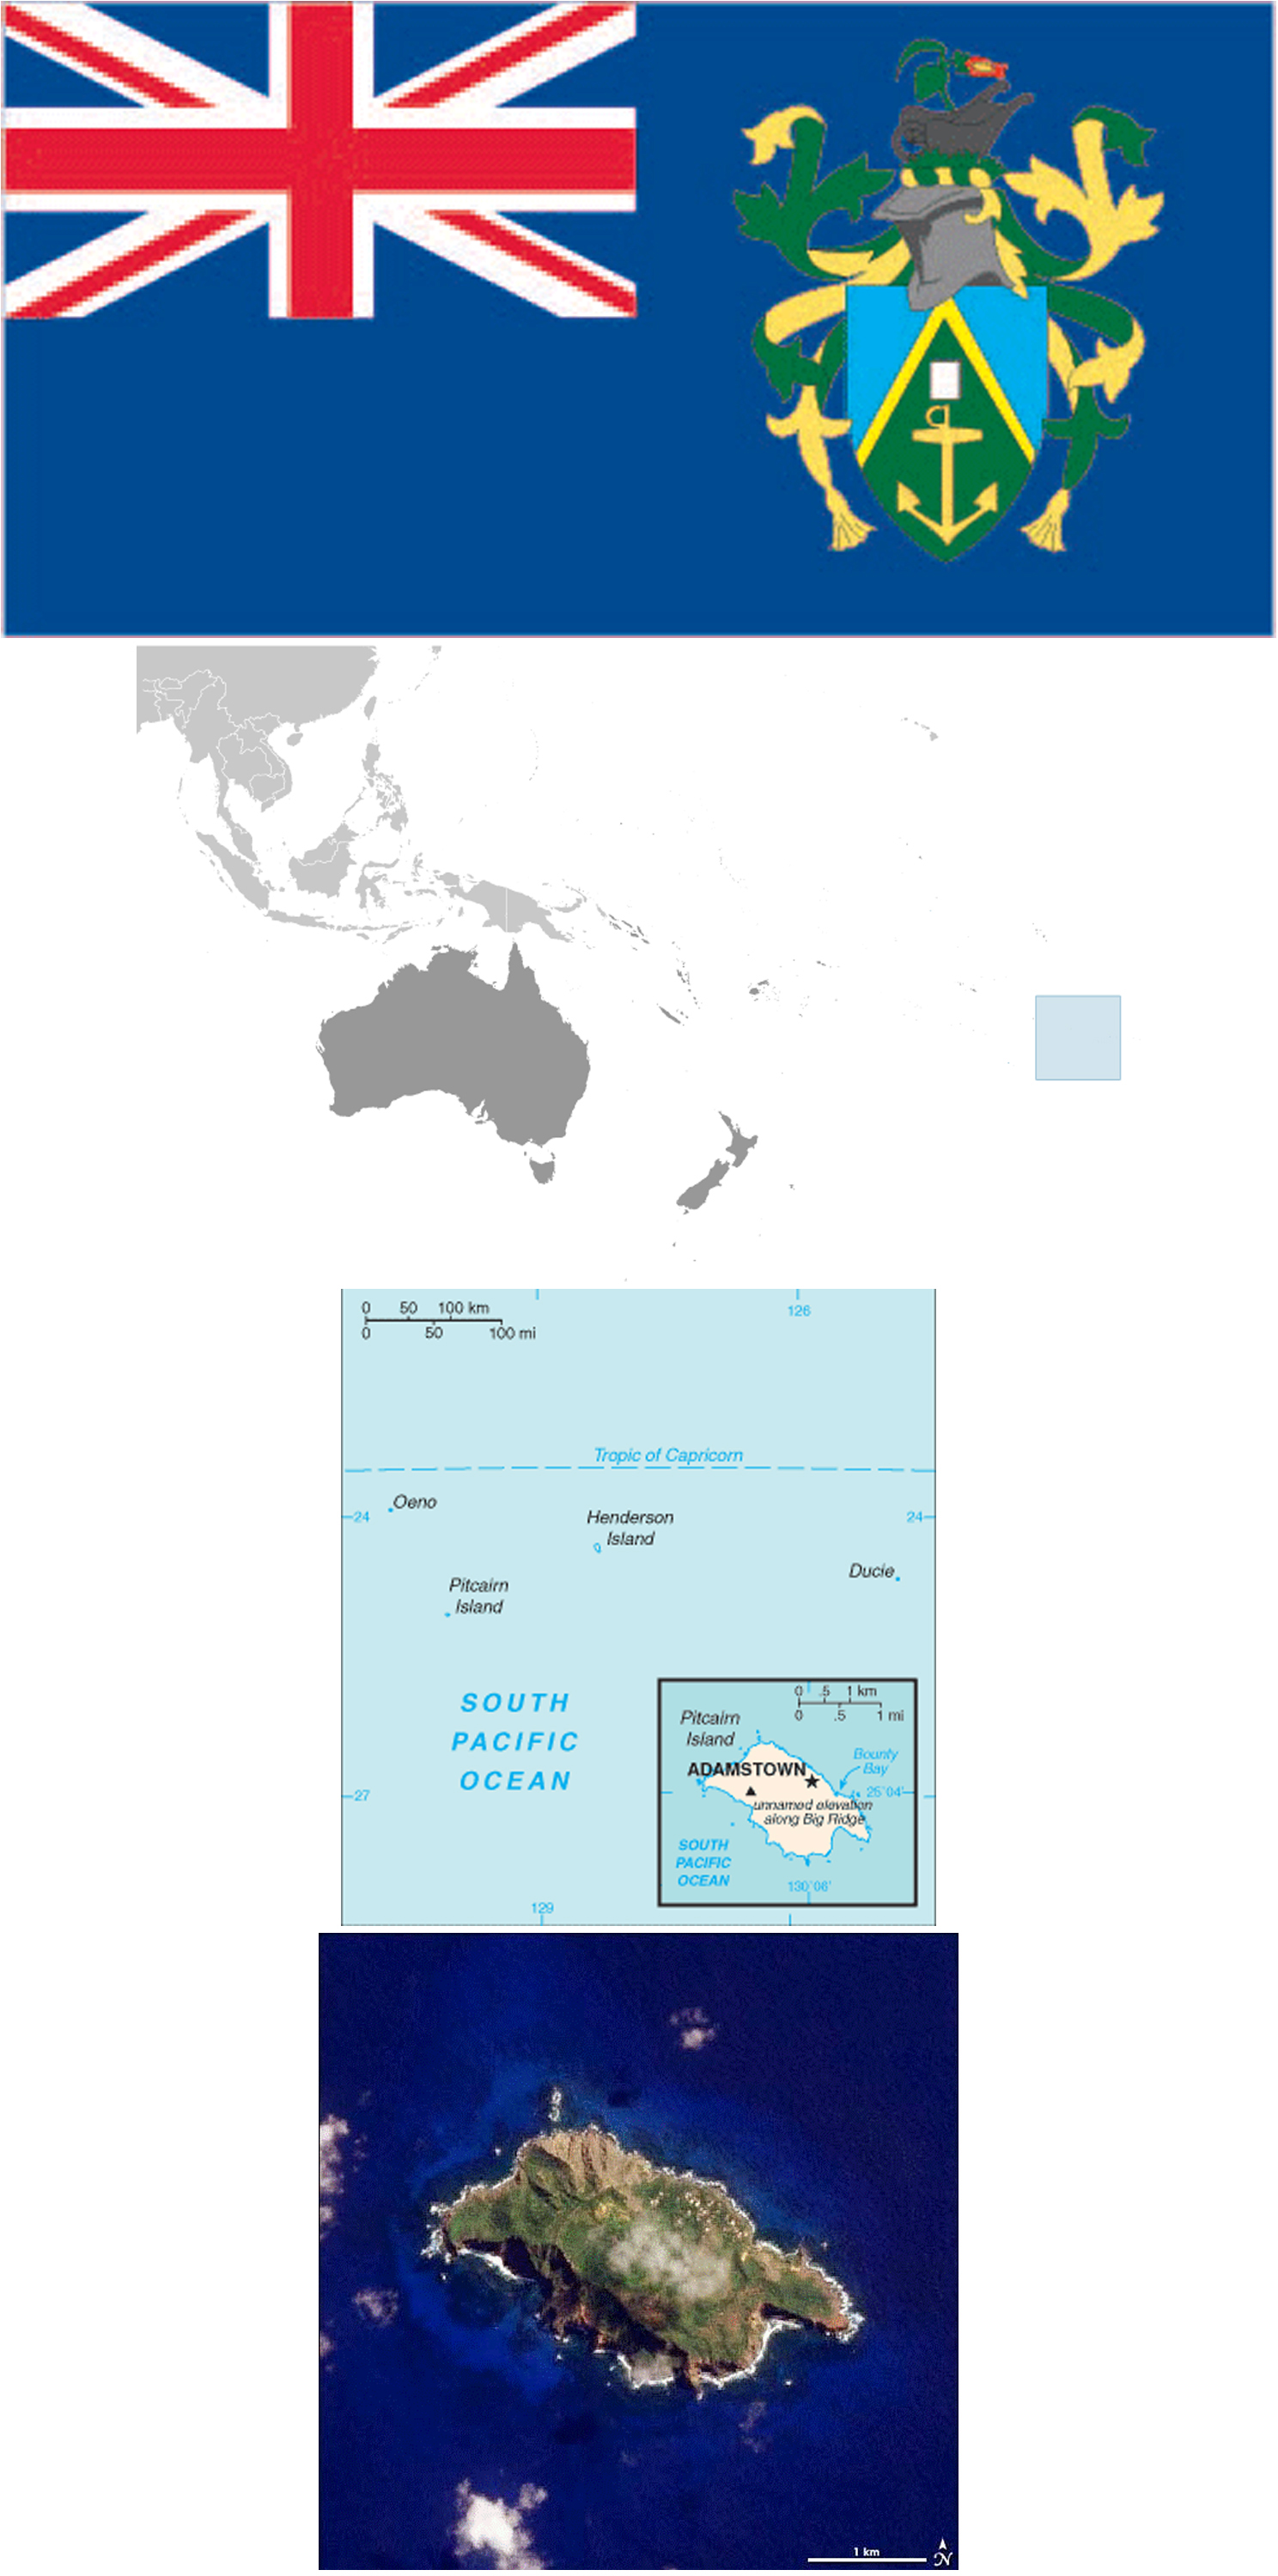 Pitcairn Islands News